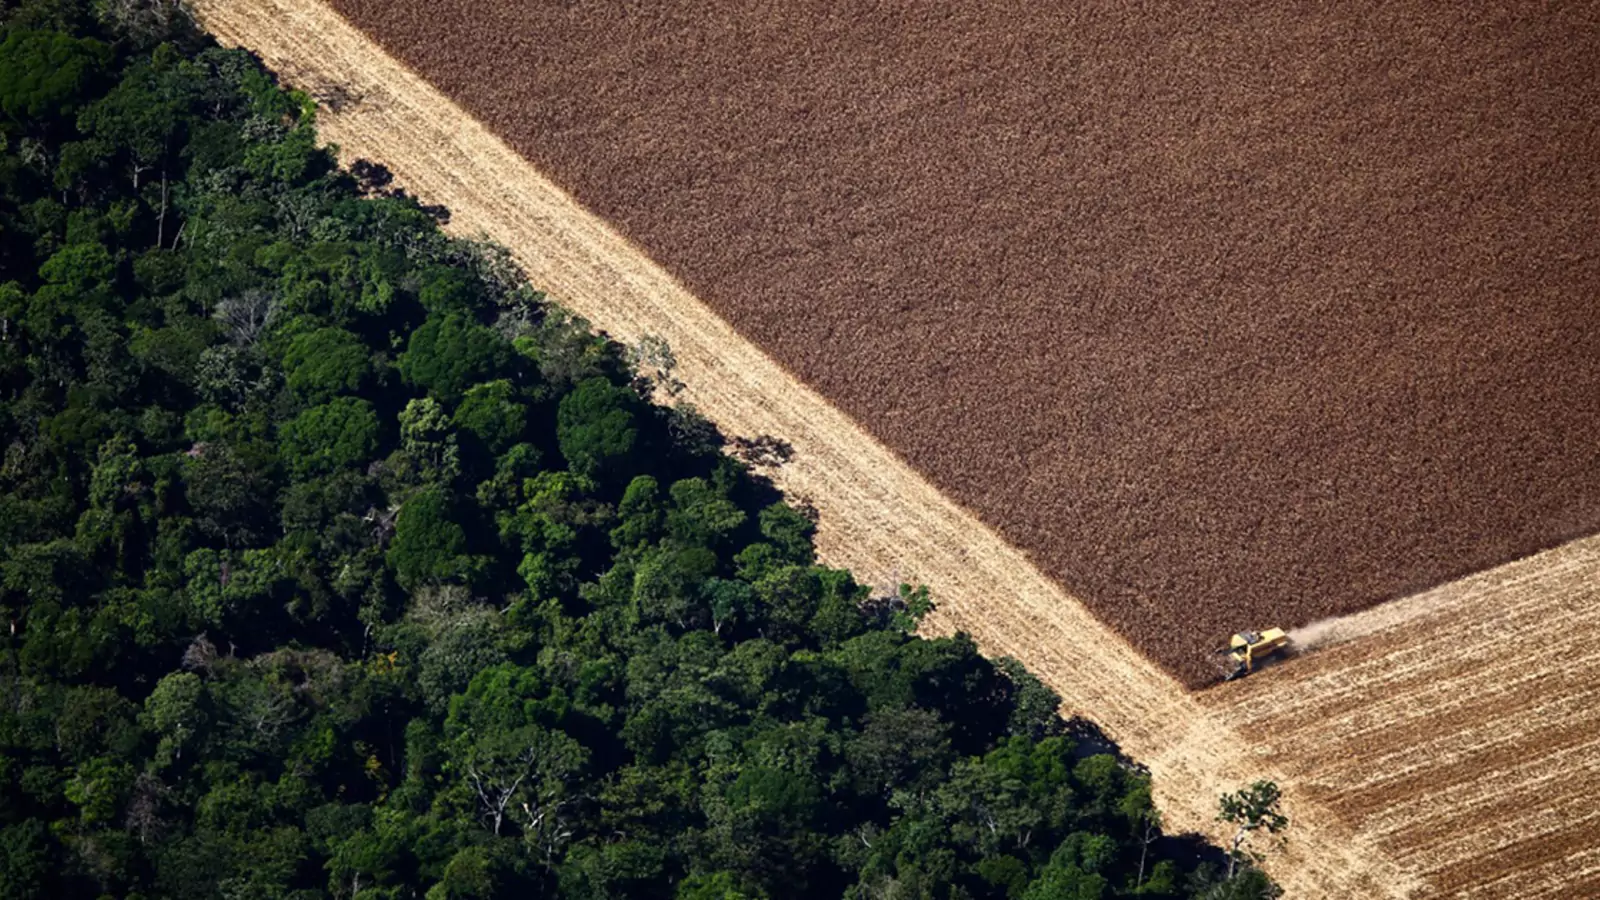 Deforestation in  Rainforest Threatens Indigenous Lands